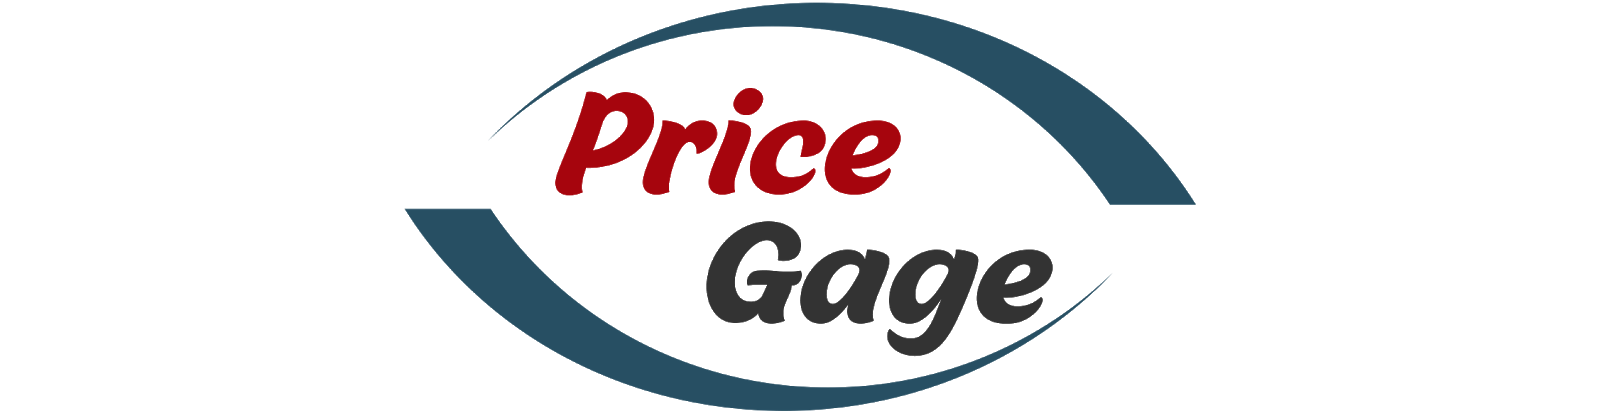 Vape Blog - Pricegage Vapor Store